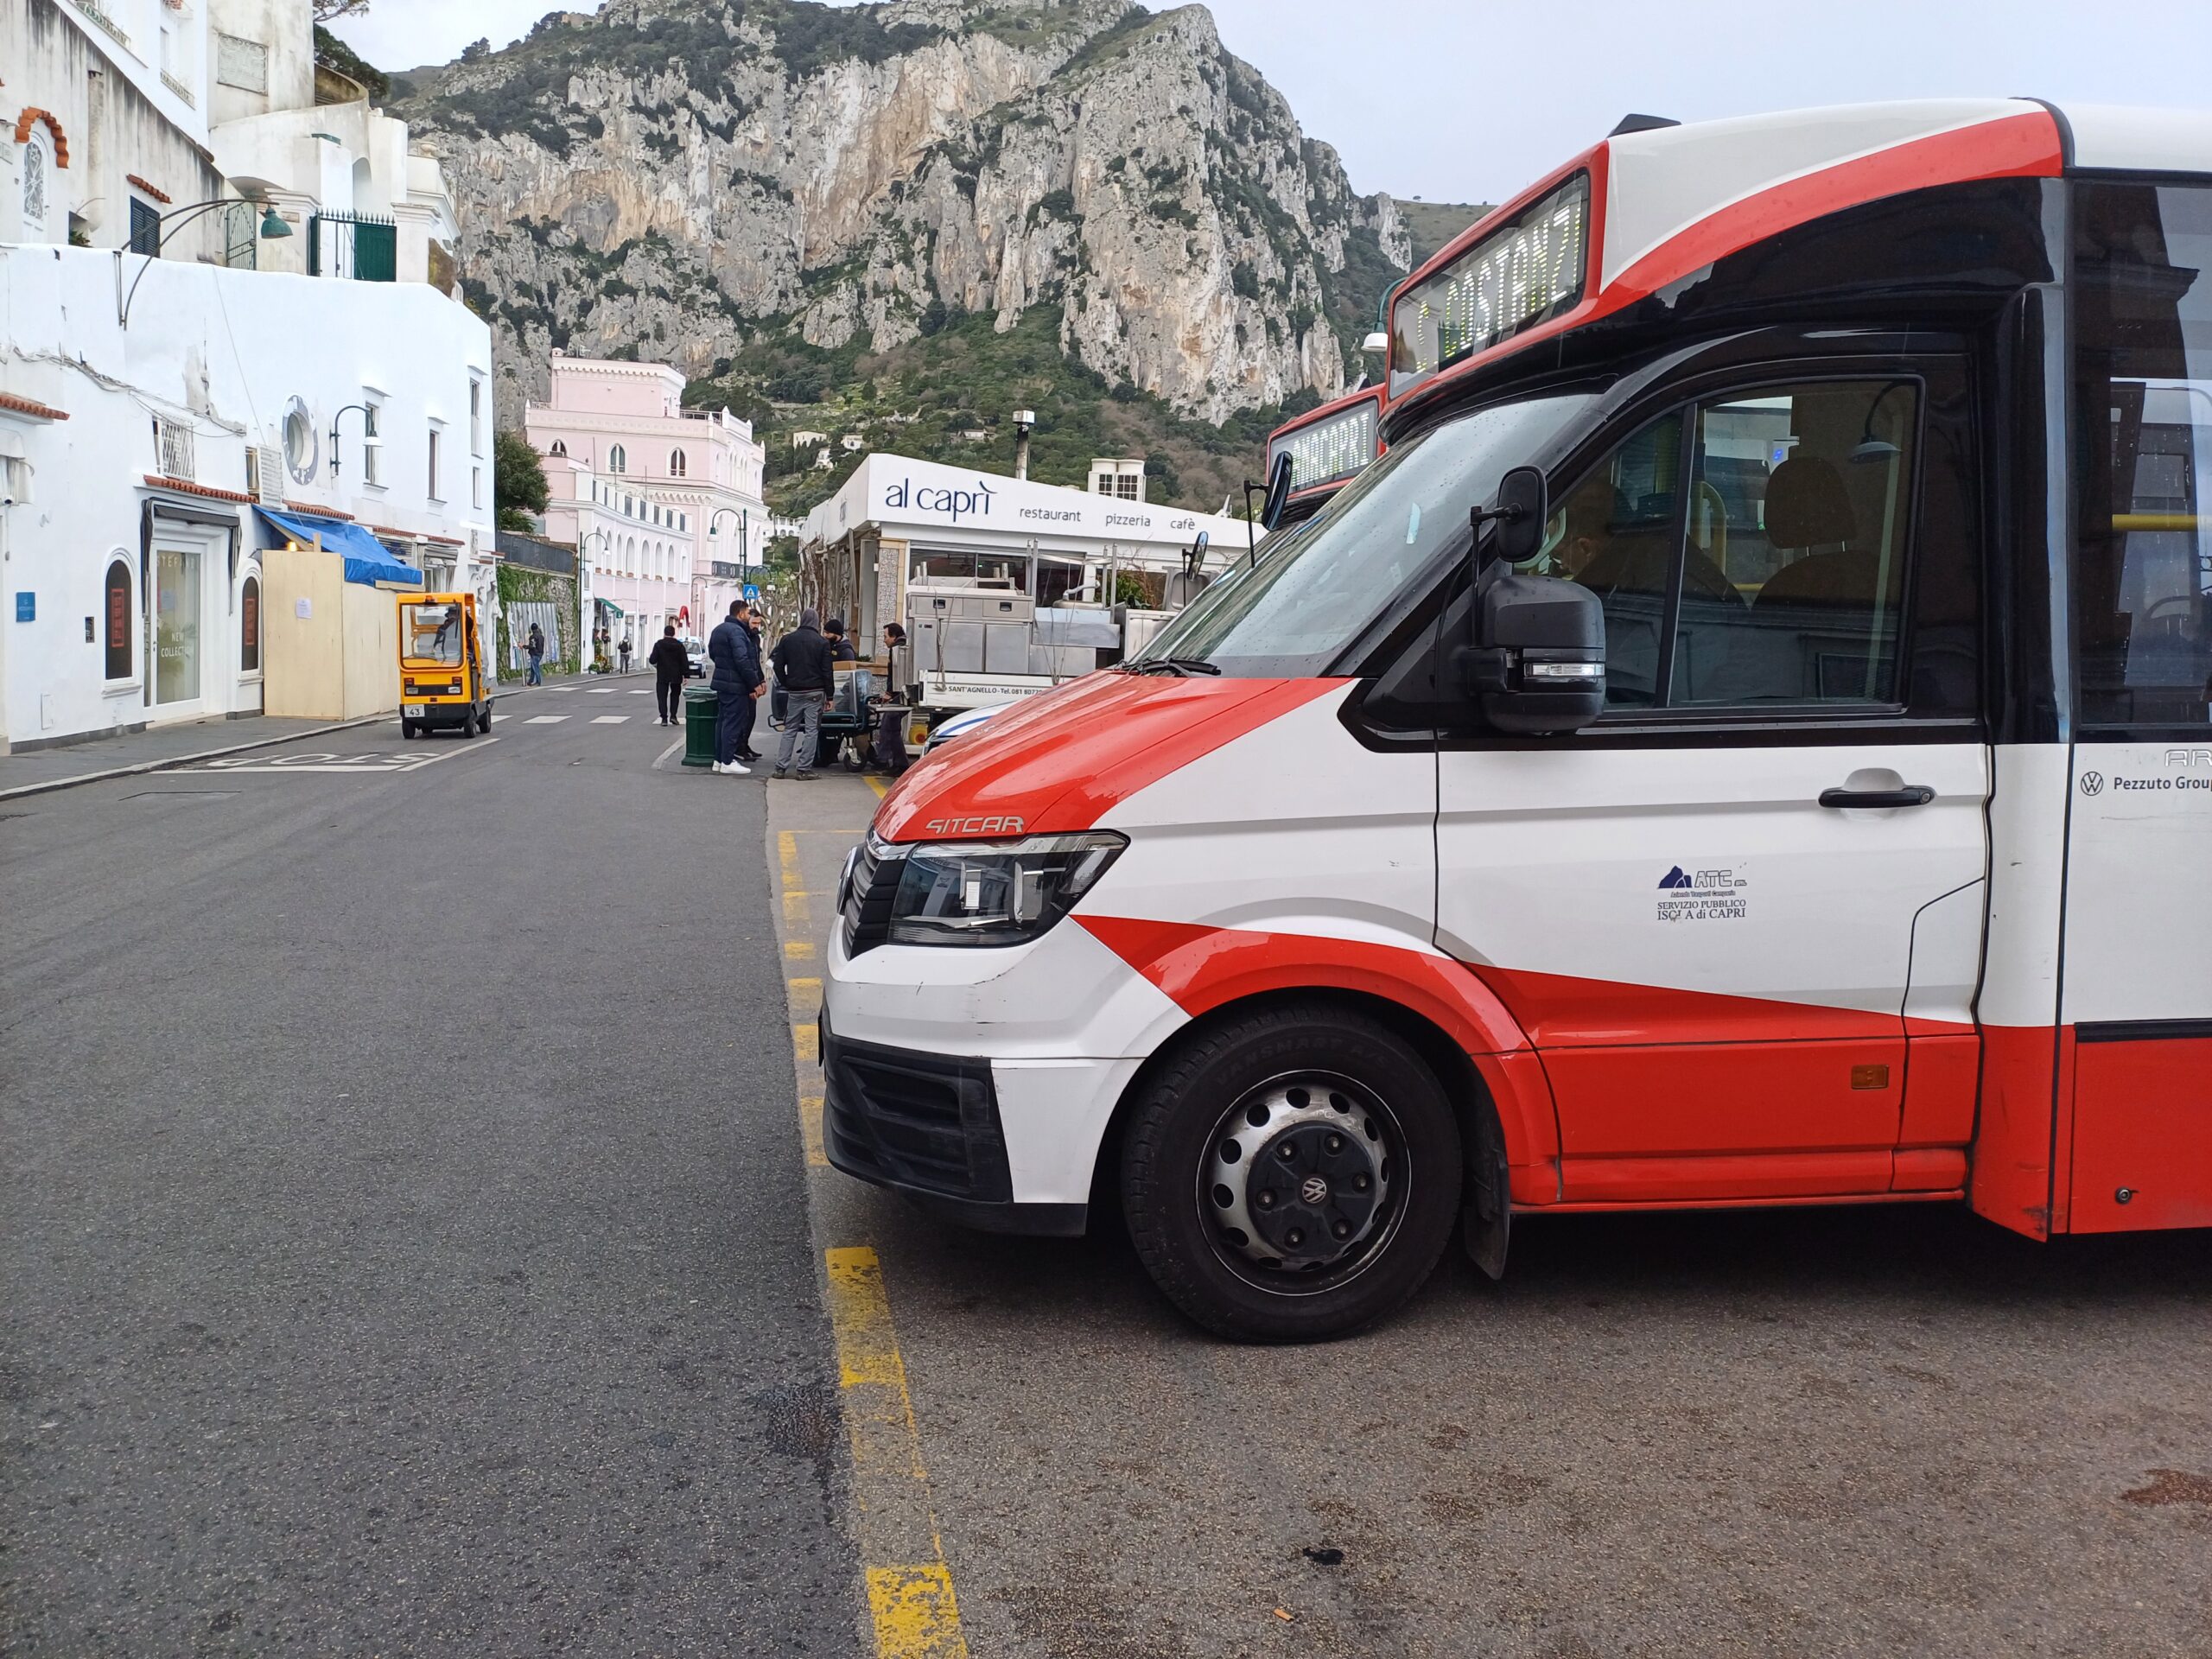 Atc Capri, dipendenti senza stipendio: sciopero di 4 ore. La posizione dell’Usb